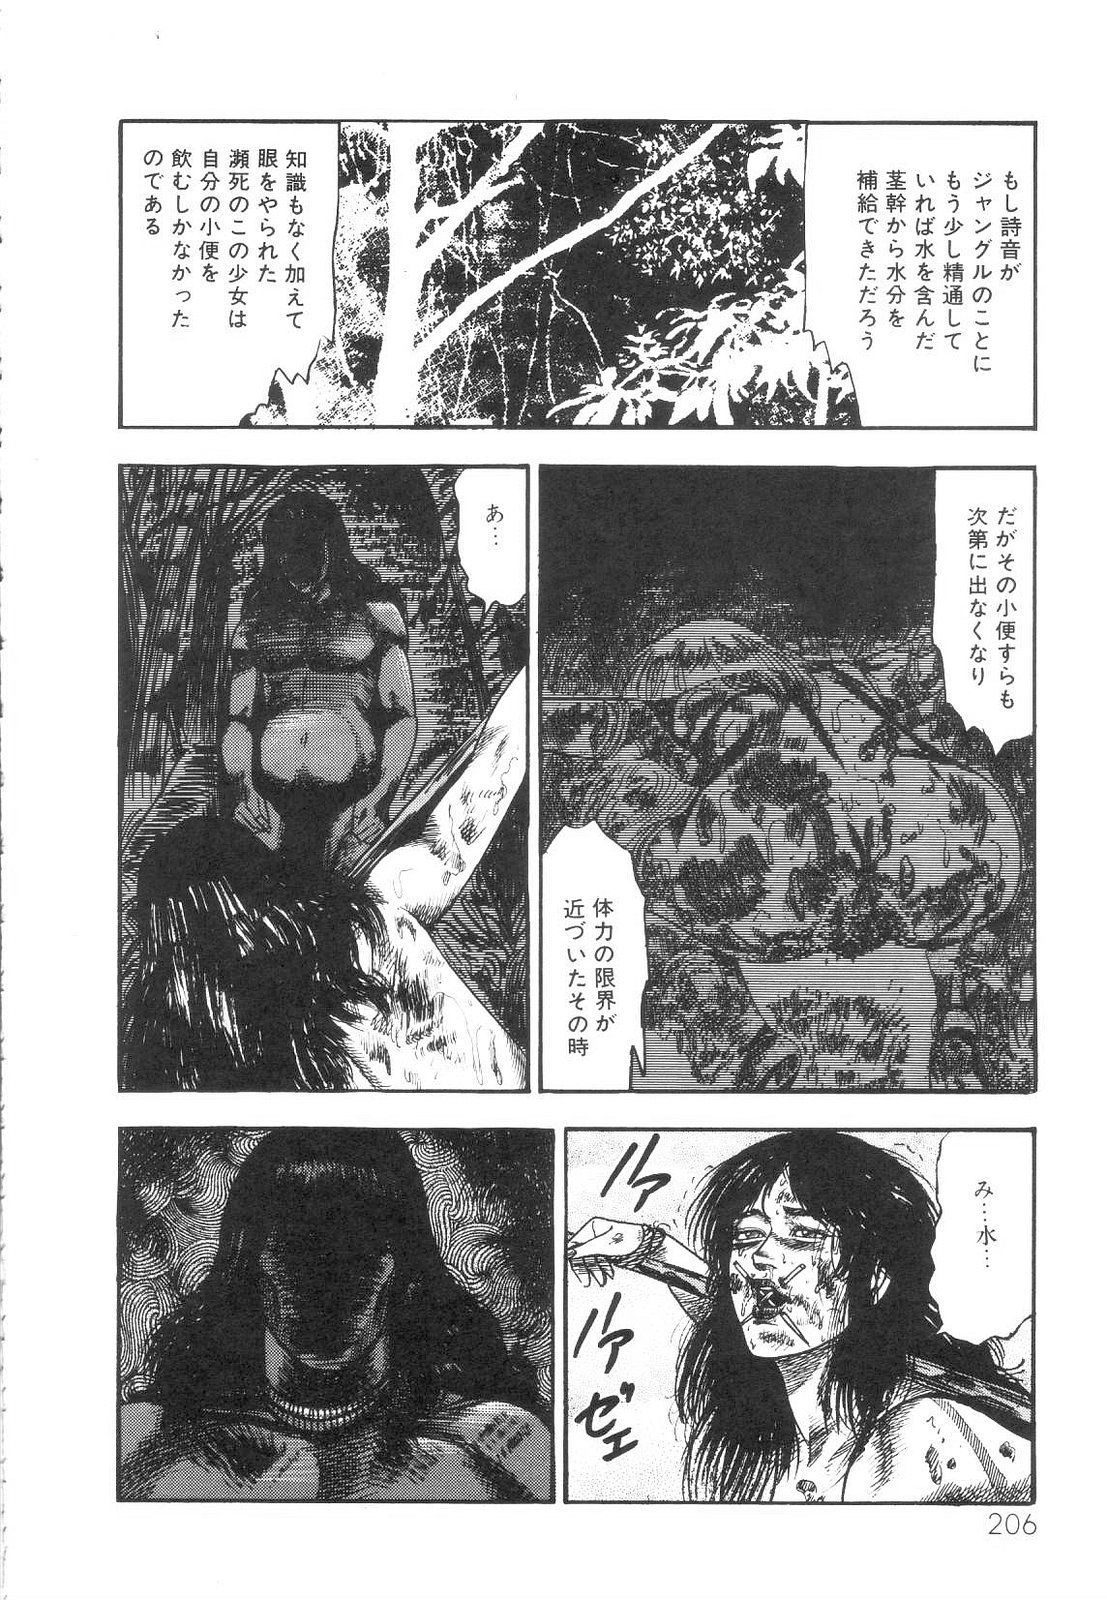 [Sanjou Tomomi] Shiro no Mokushiroku Vol. 1 - Sei Shojo Shion no Shou 206